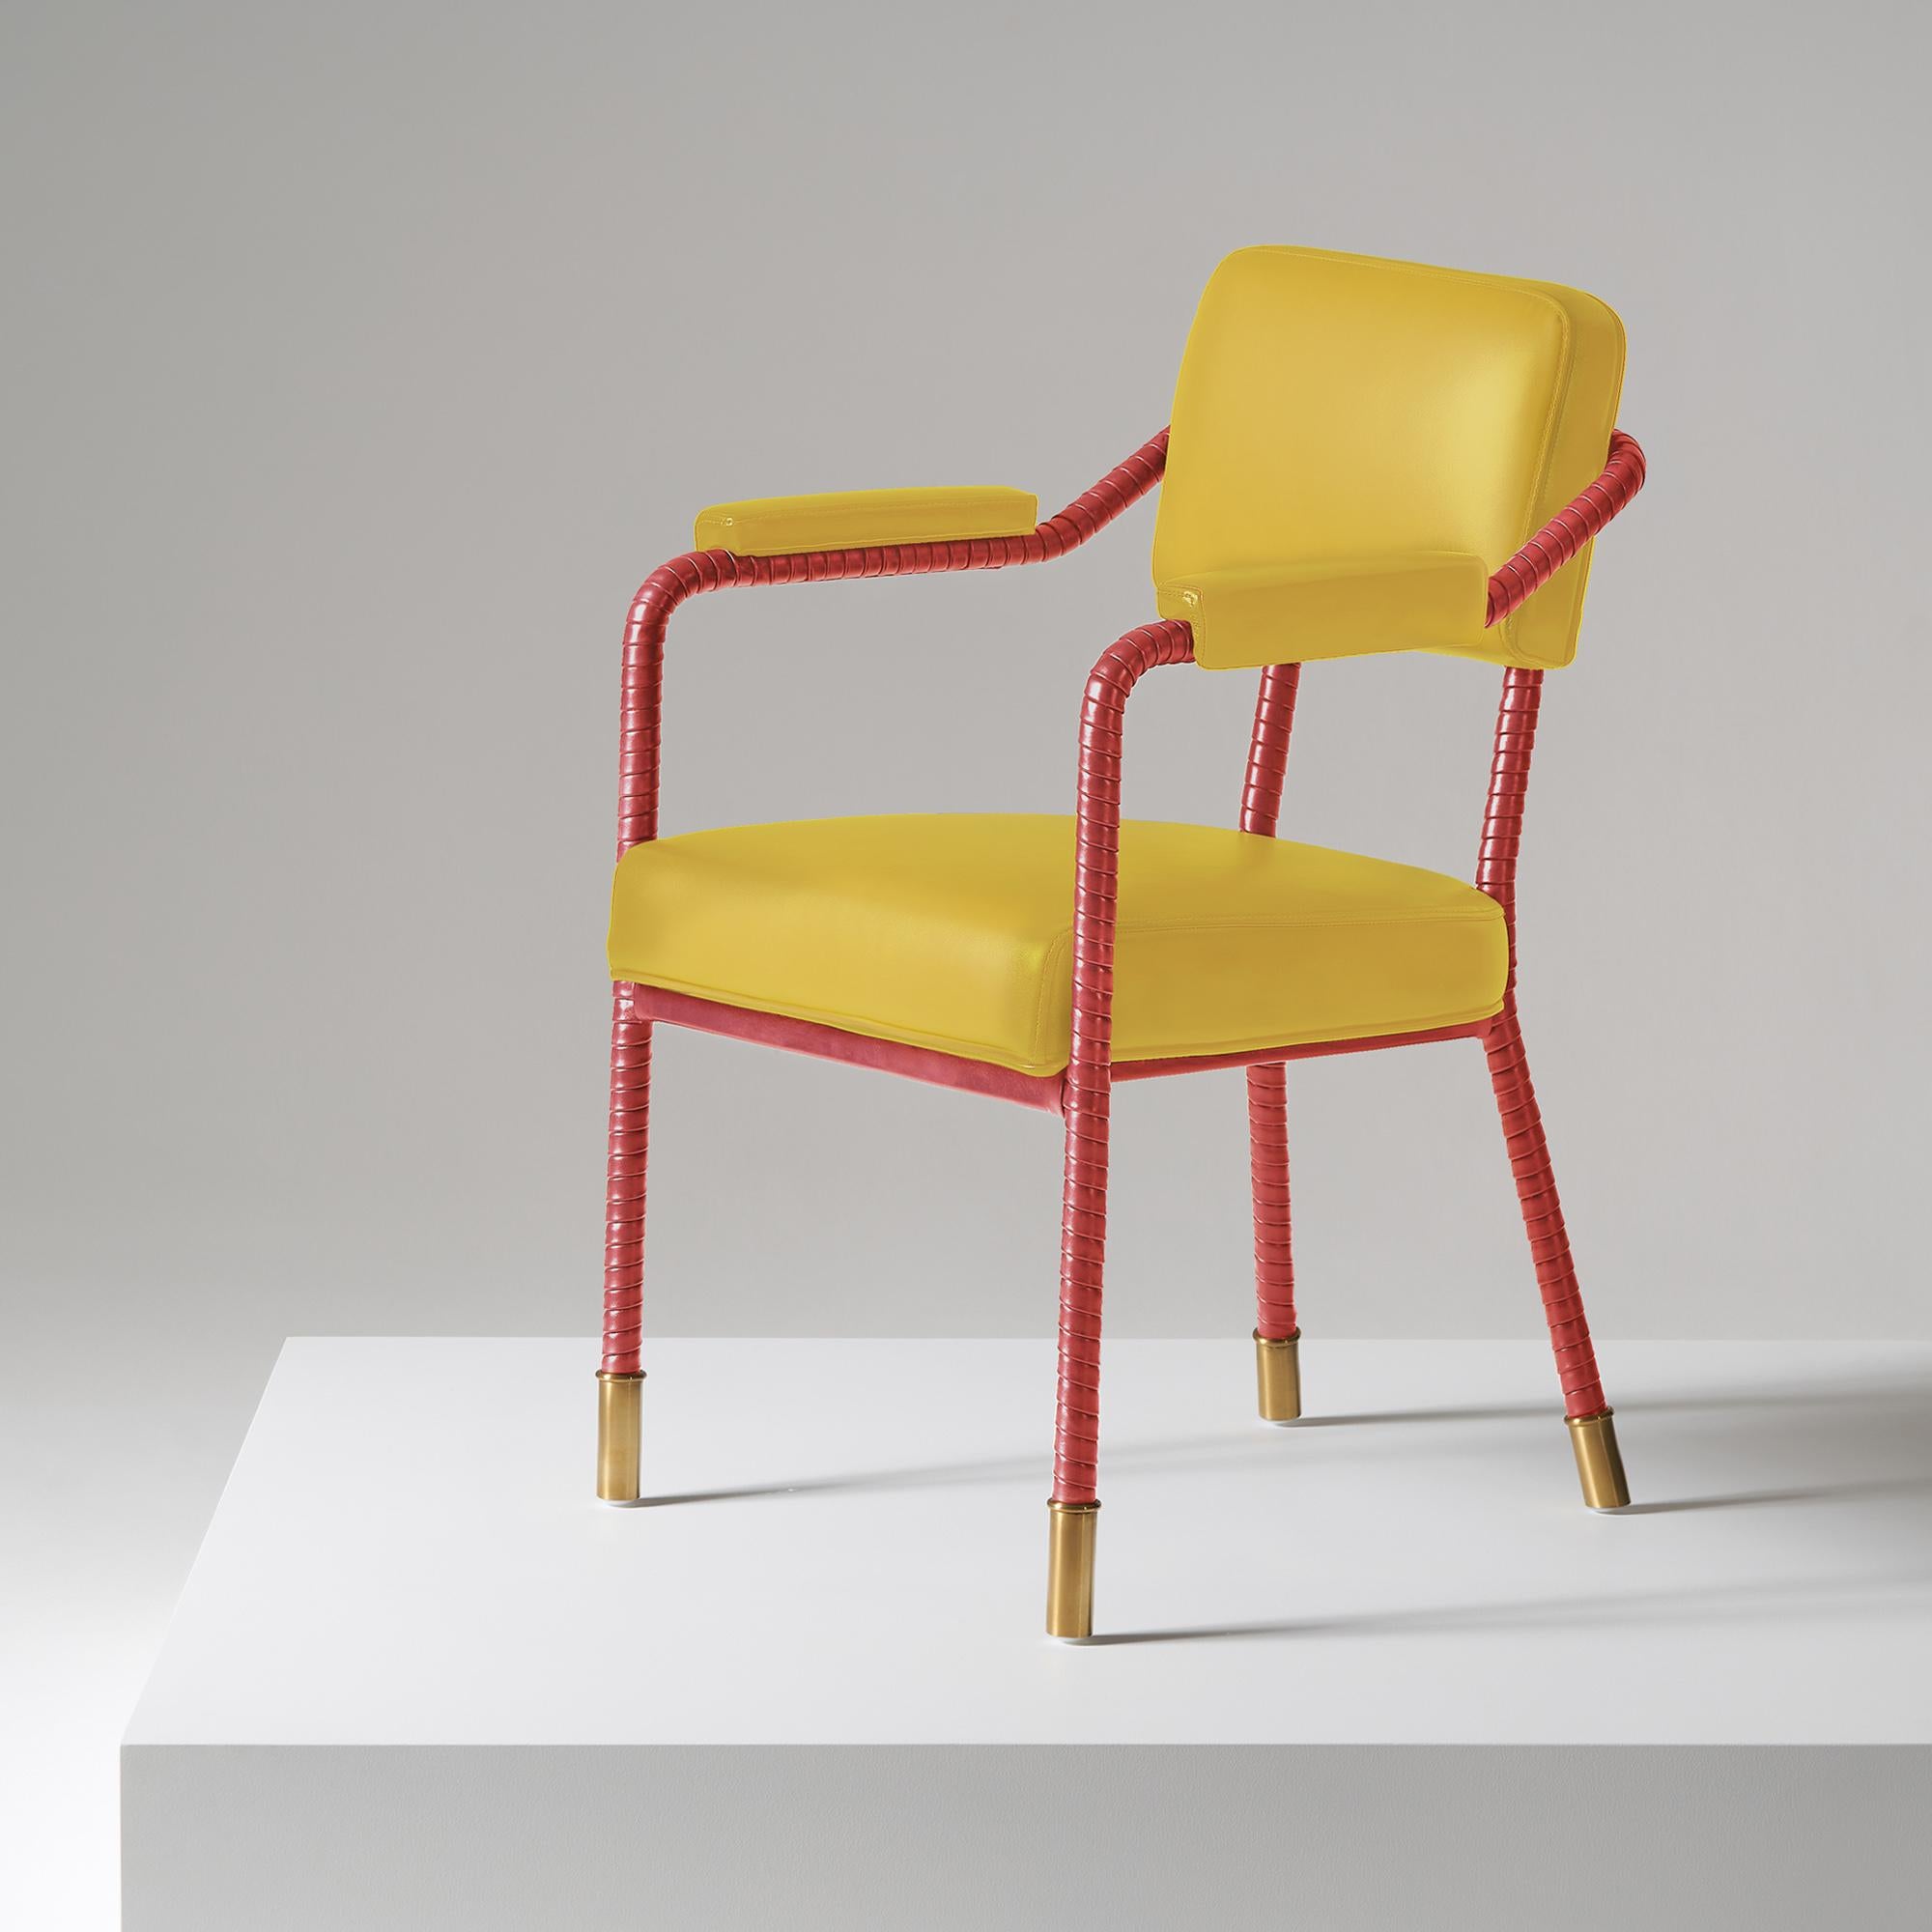 And objects, studio de design de produits fondé par Martin Brudnizki et Nick Jeanes et basé à Londres.

La chaise de salle à manger Easton est fabriquée de manière unique à partir d'acier inoxydable et de cuir italien. Le cuir enveloppé à la main